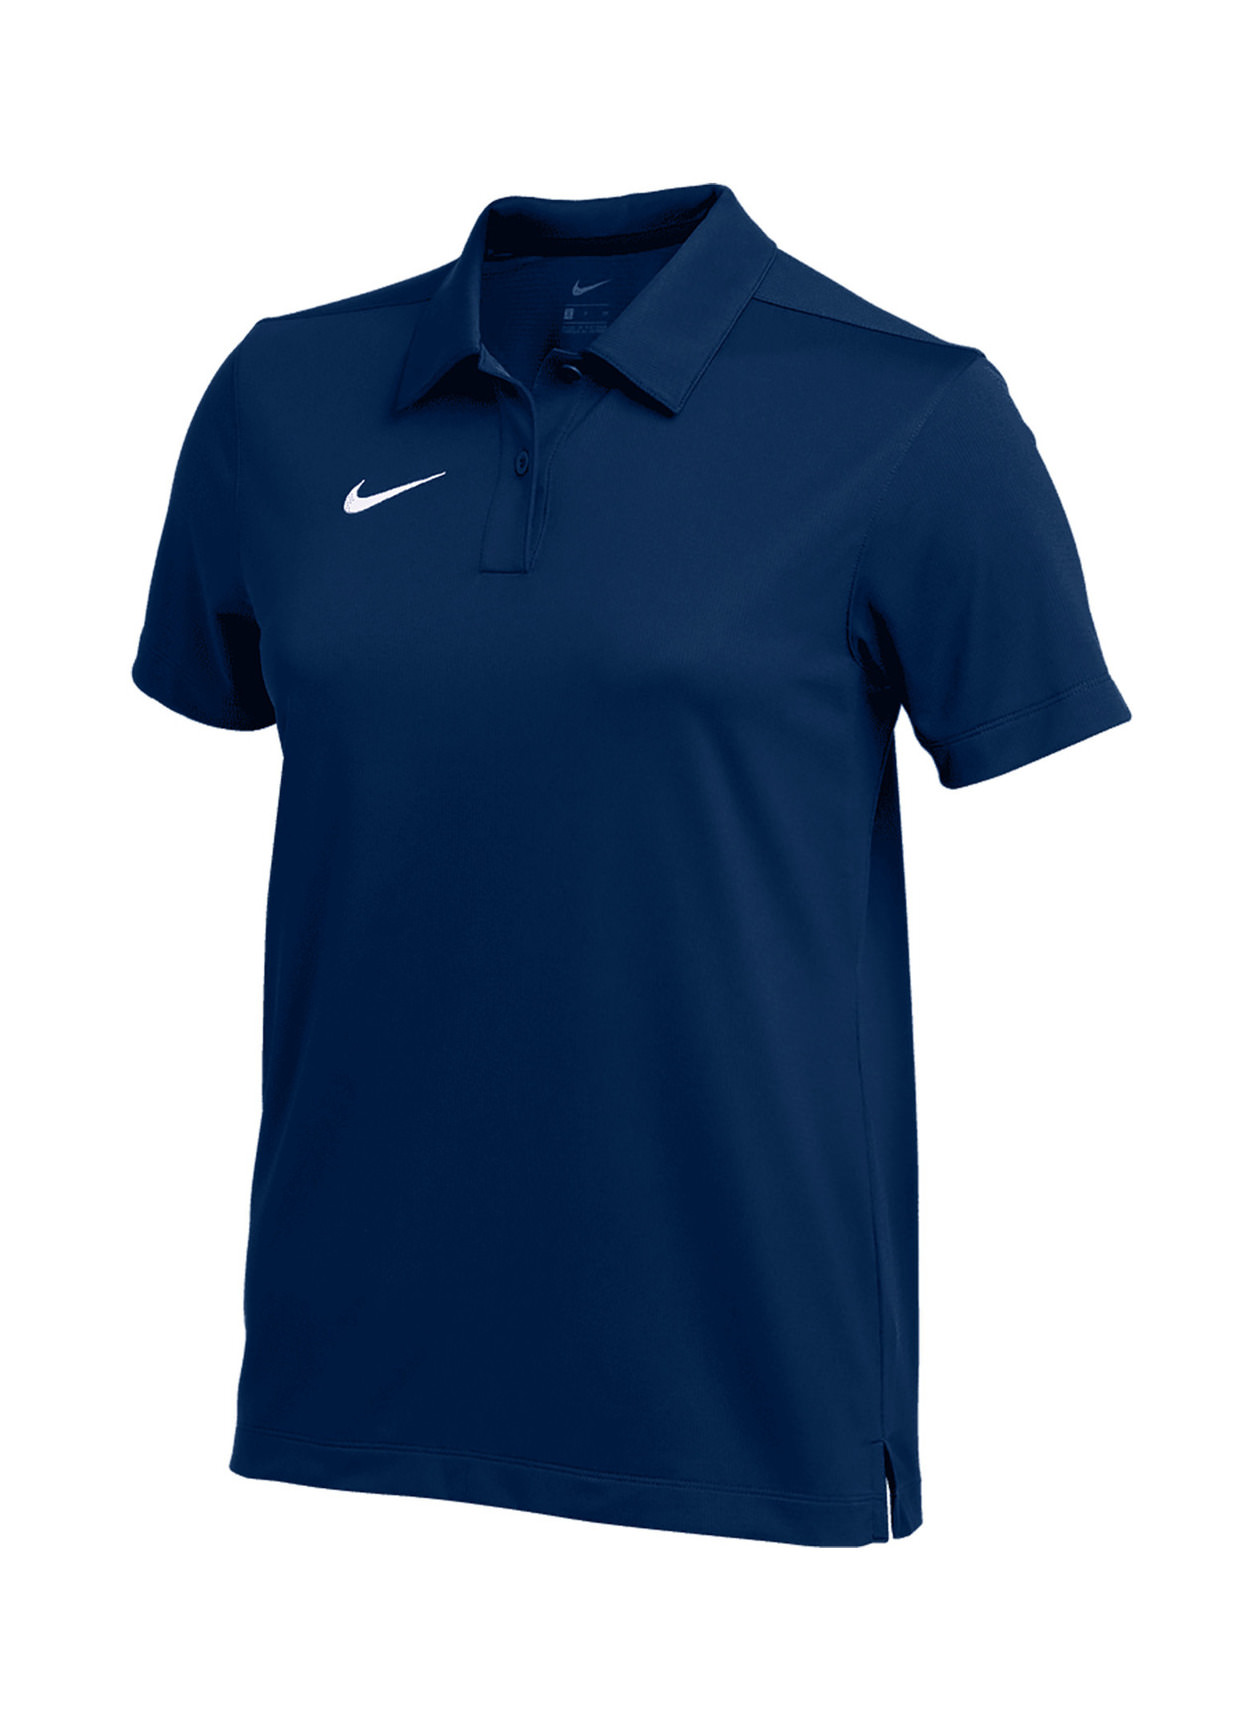 Nike Women's Navy Dri-FIT Franchise Polo